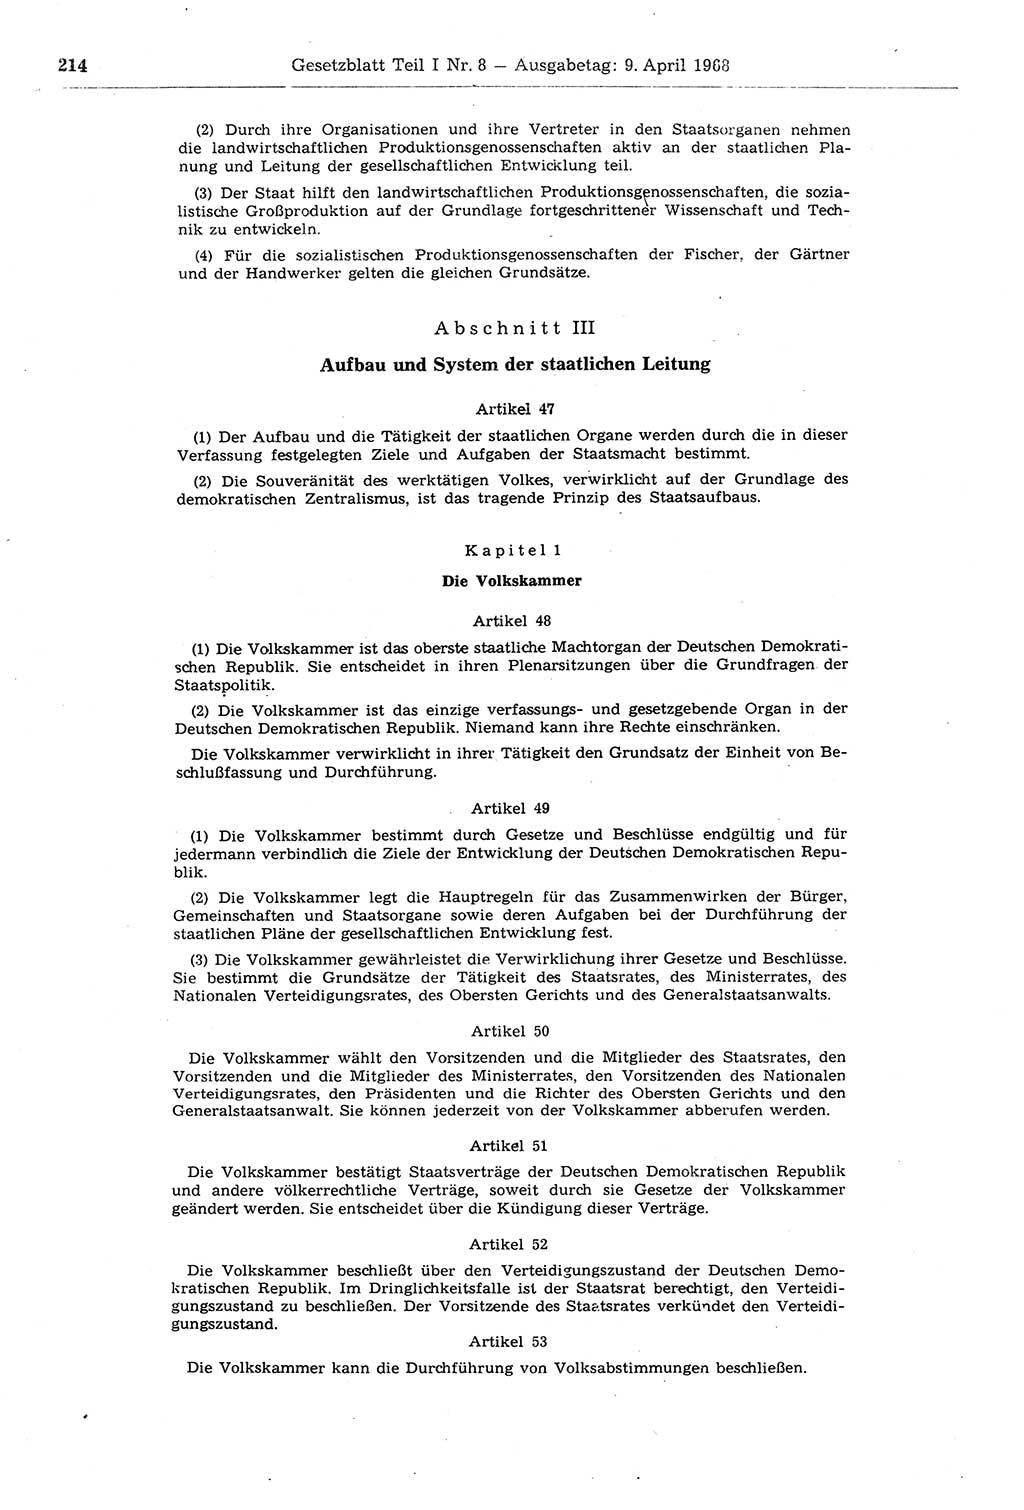 Gesetzblatt (GBl.) der Deutschen Demokratischen Republik (DDR) Teil Ⅰ 1968, Seite 214 (GBl. DDR Ⅰ 1968, S. 214)